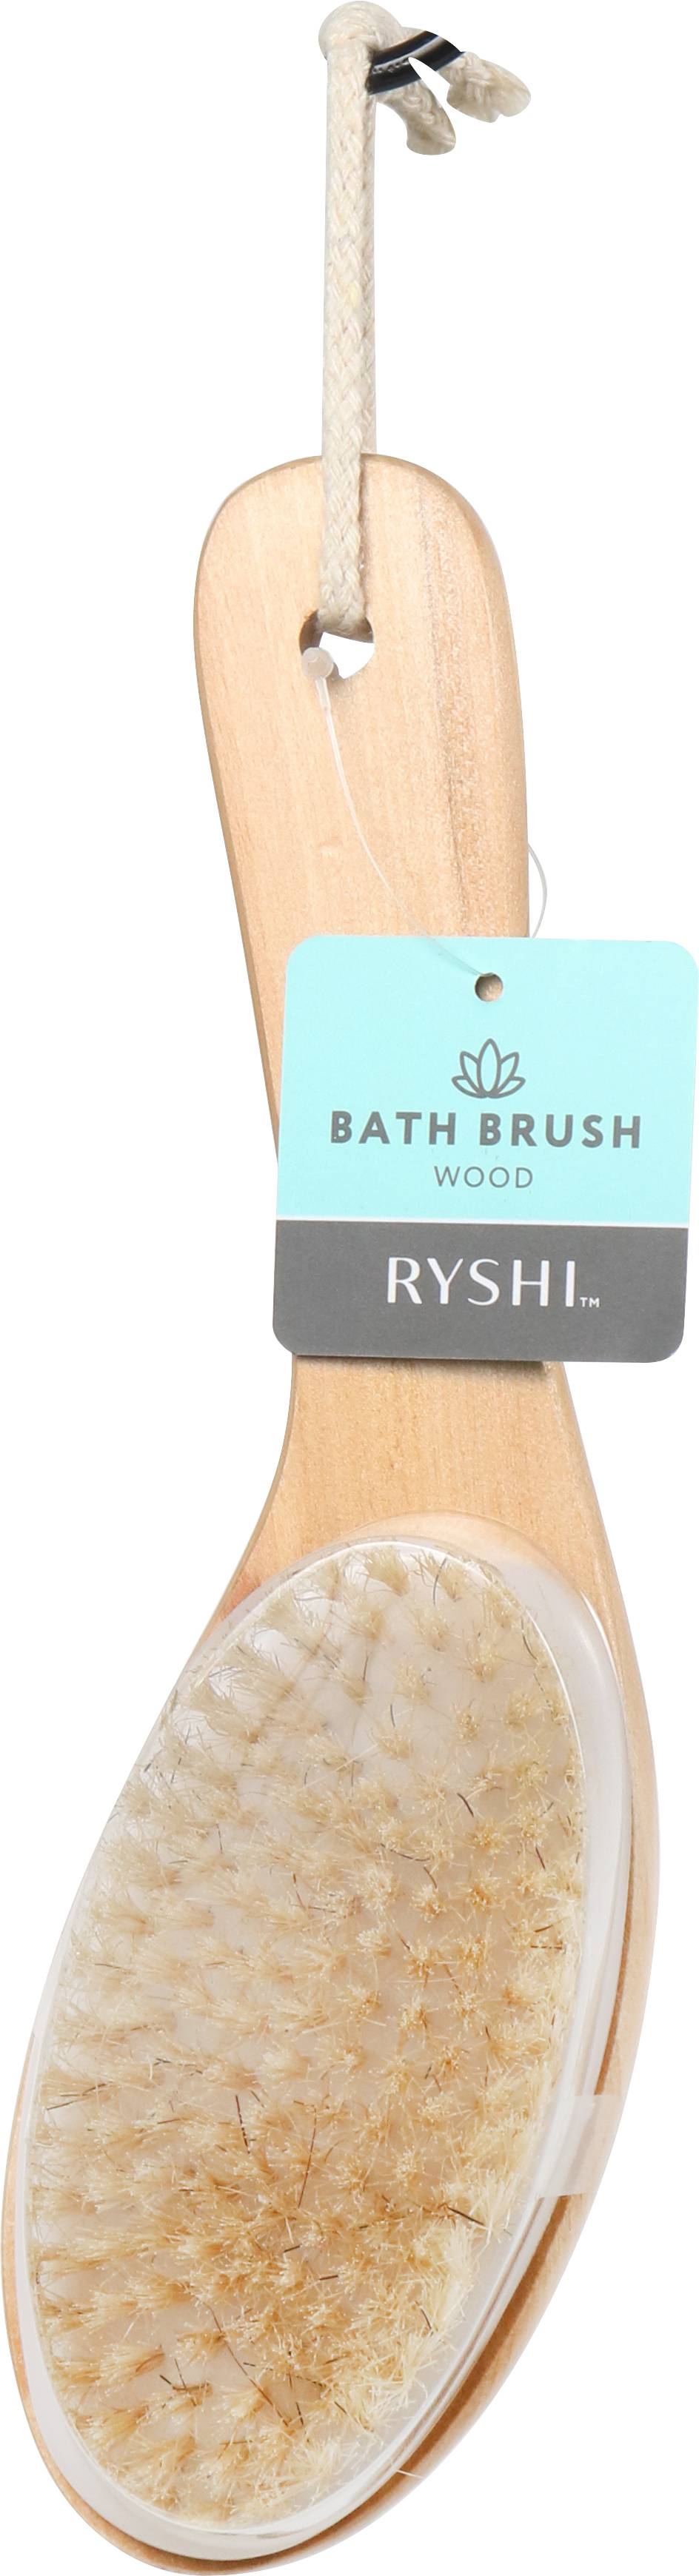 Ryshi Bath Brush Dry Wood